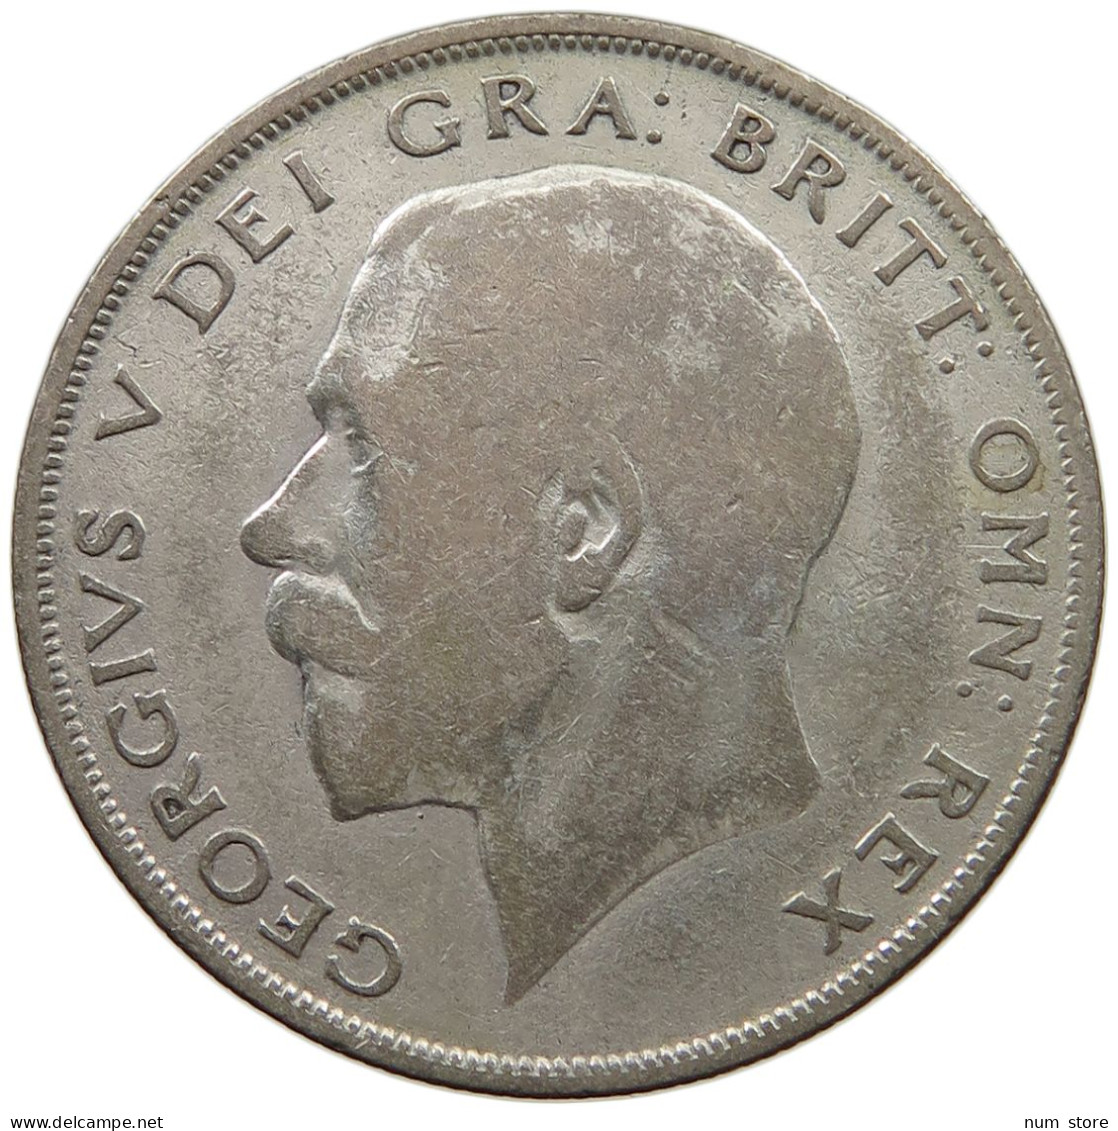 GREAT BRITAIN HALF CROWN 1922 George V. (1910-1936) #c001 0309 - K. 1/2 Crown